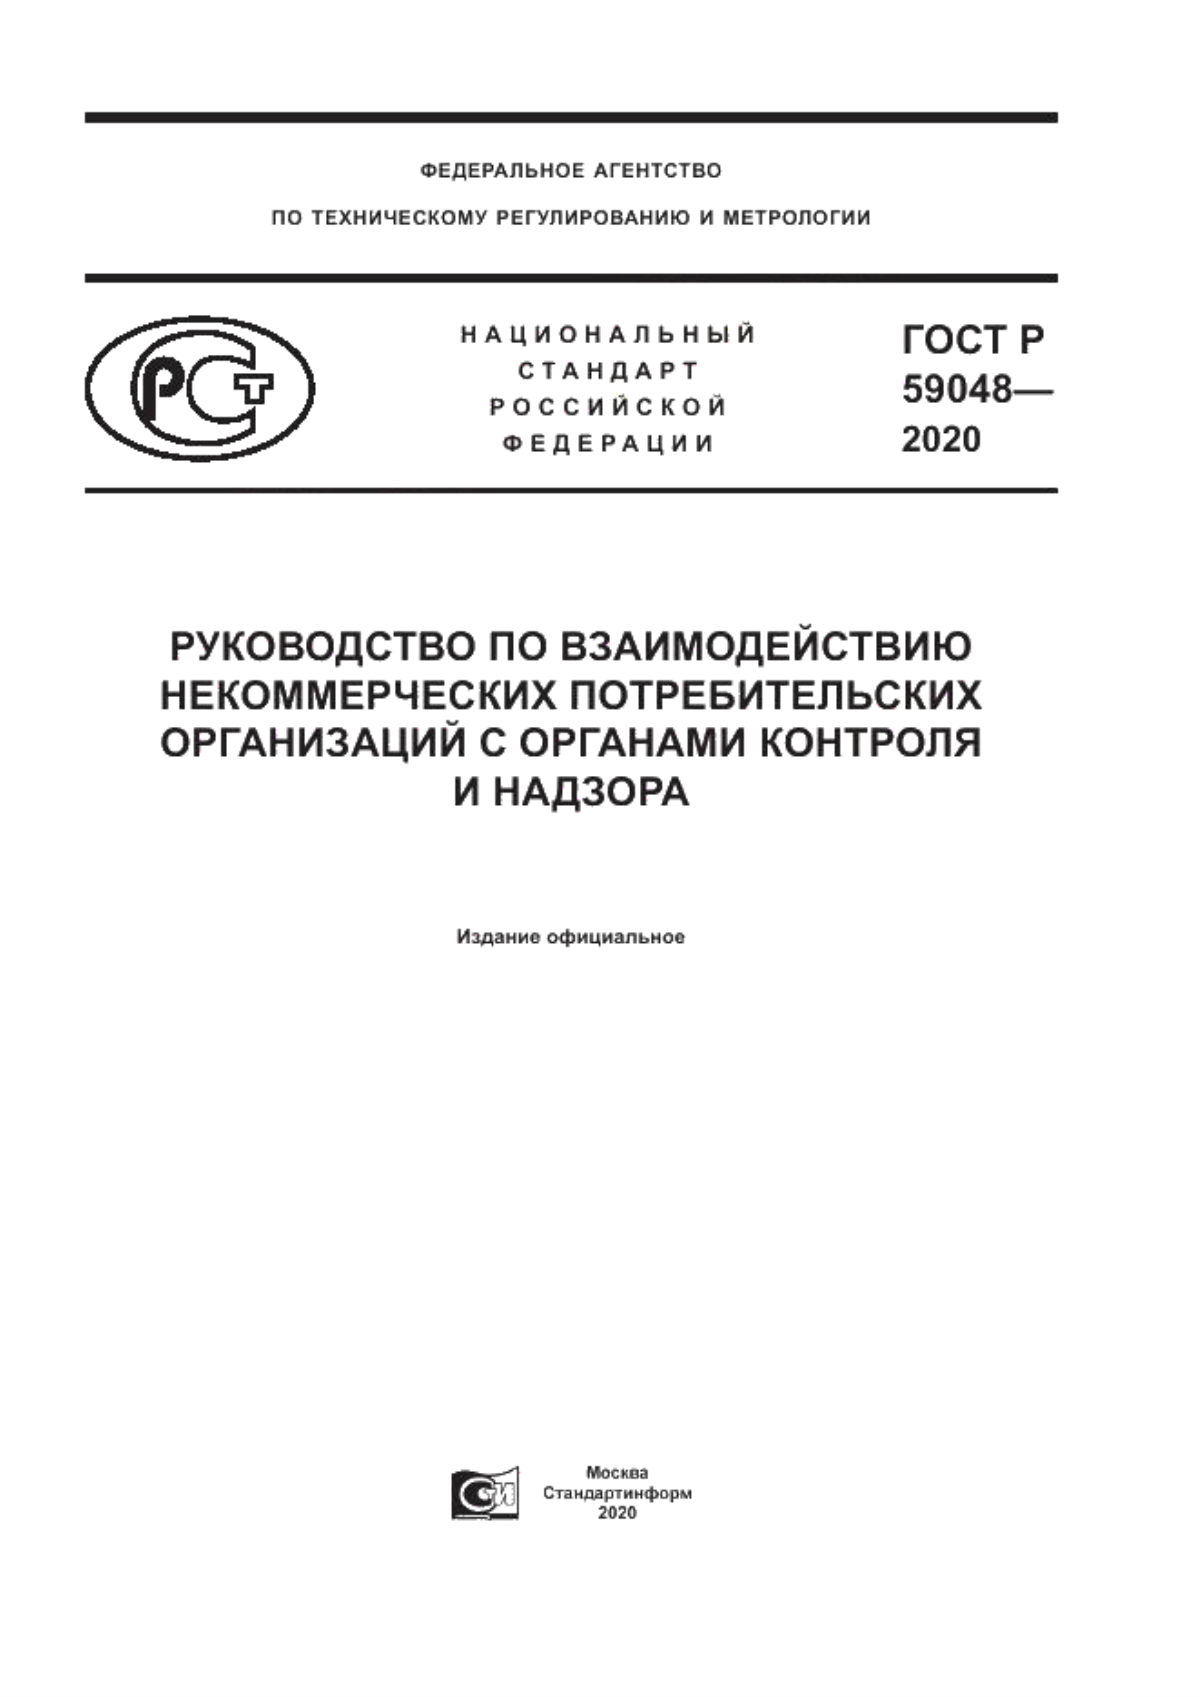 ГОСТ Р 59048-2020 Руководство по взаимодействию некоммерческих потребительских организаций с органами контроля и надзора